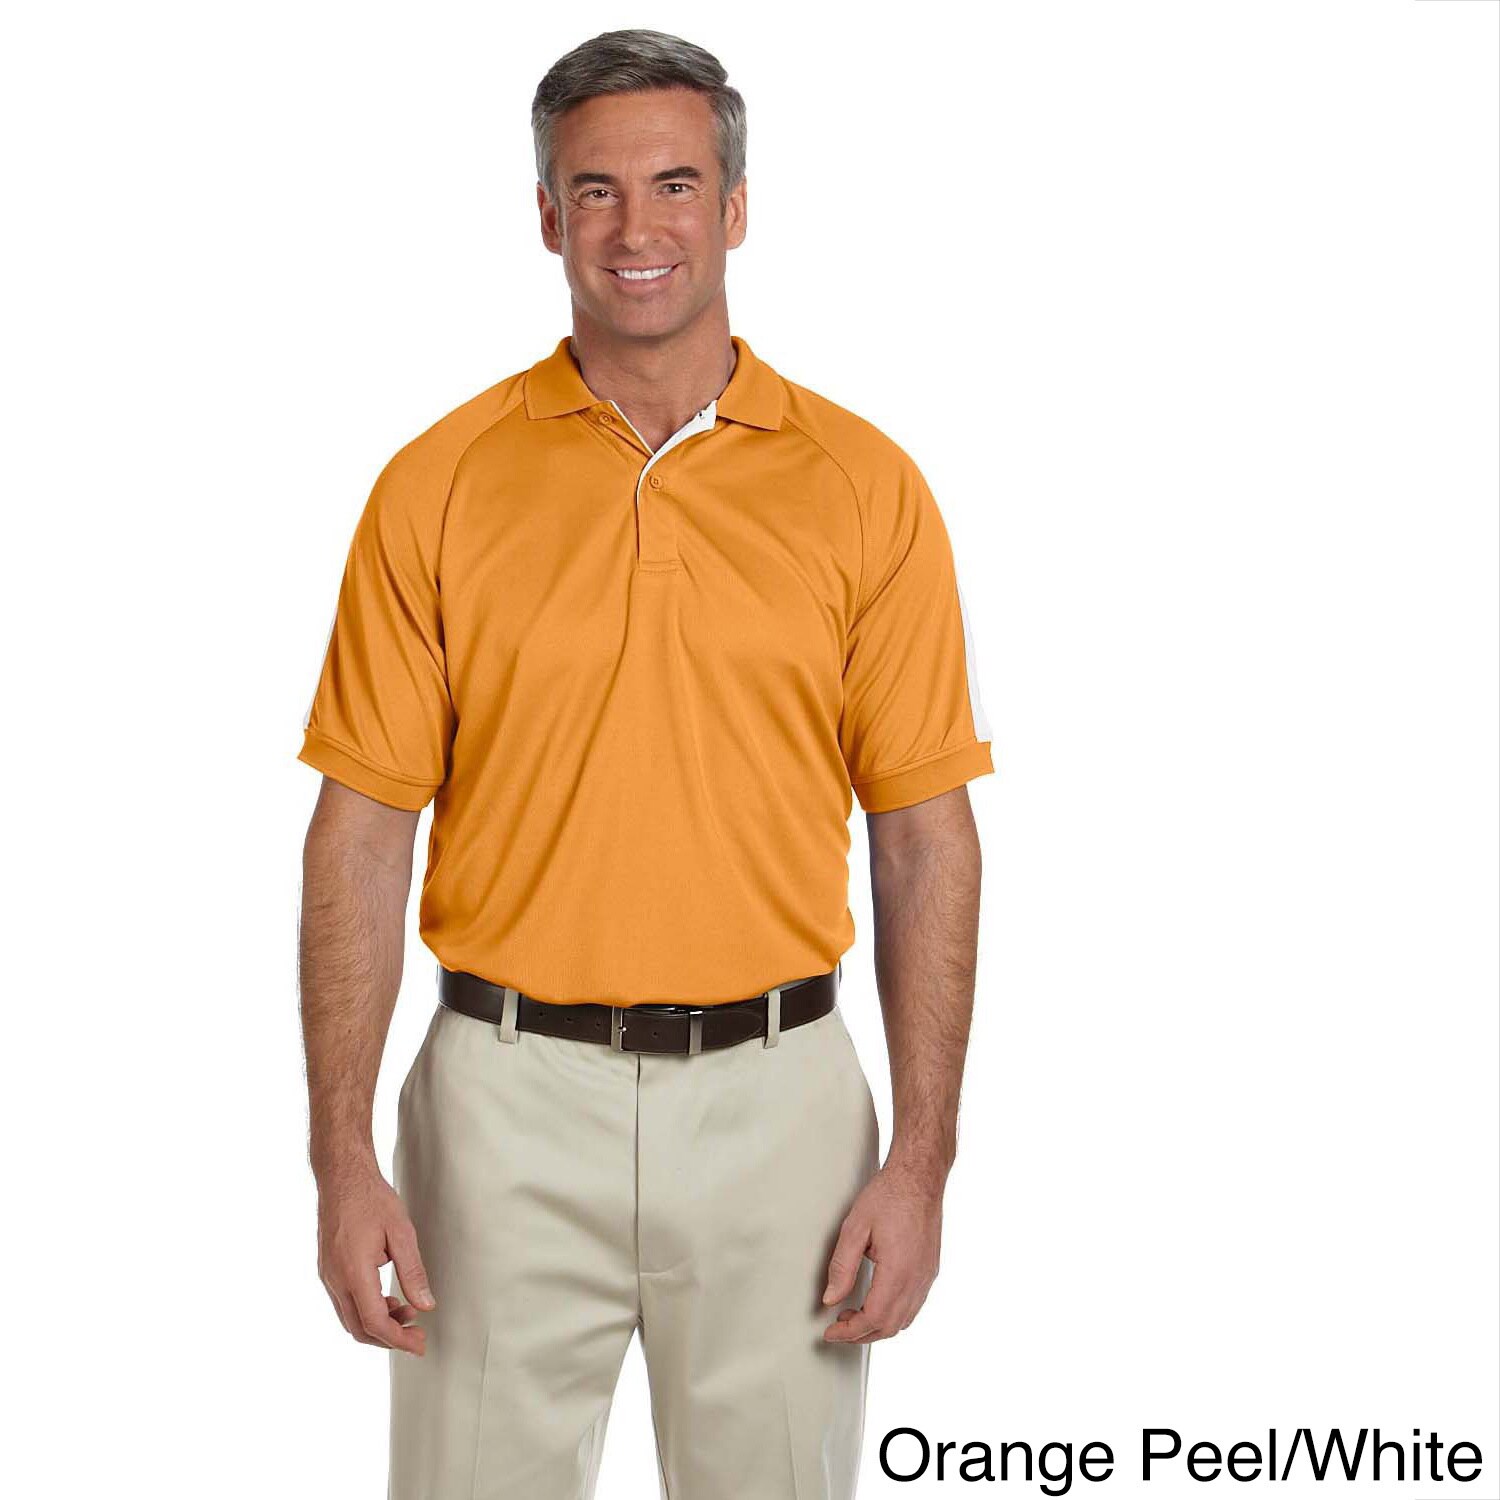 Devon and Jones Mens Dri fast Advantage Colorblock Mesh Polo Shirt Multi Size XXL